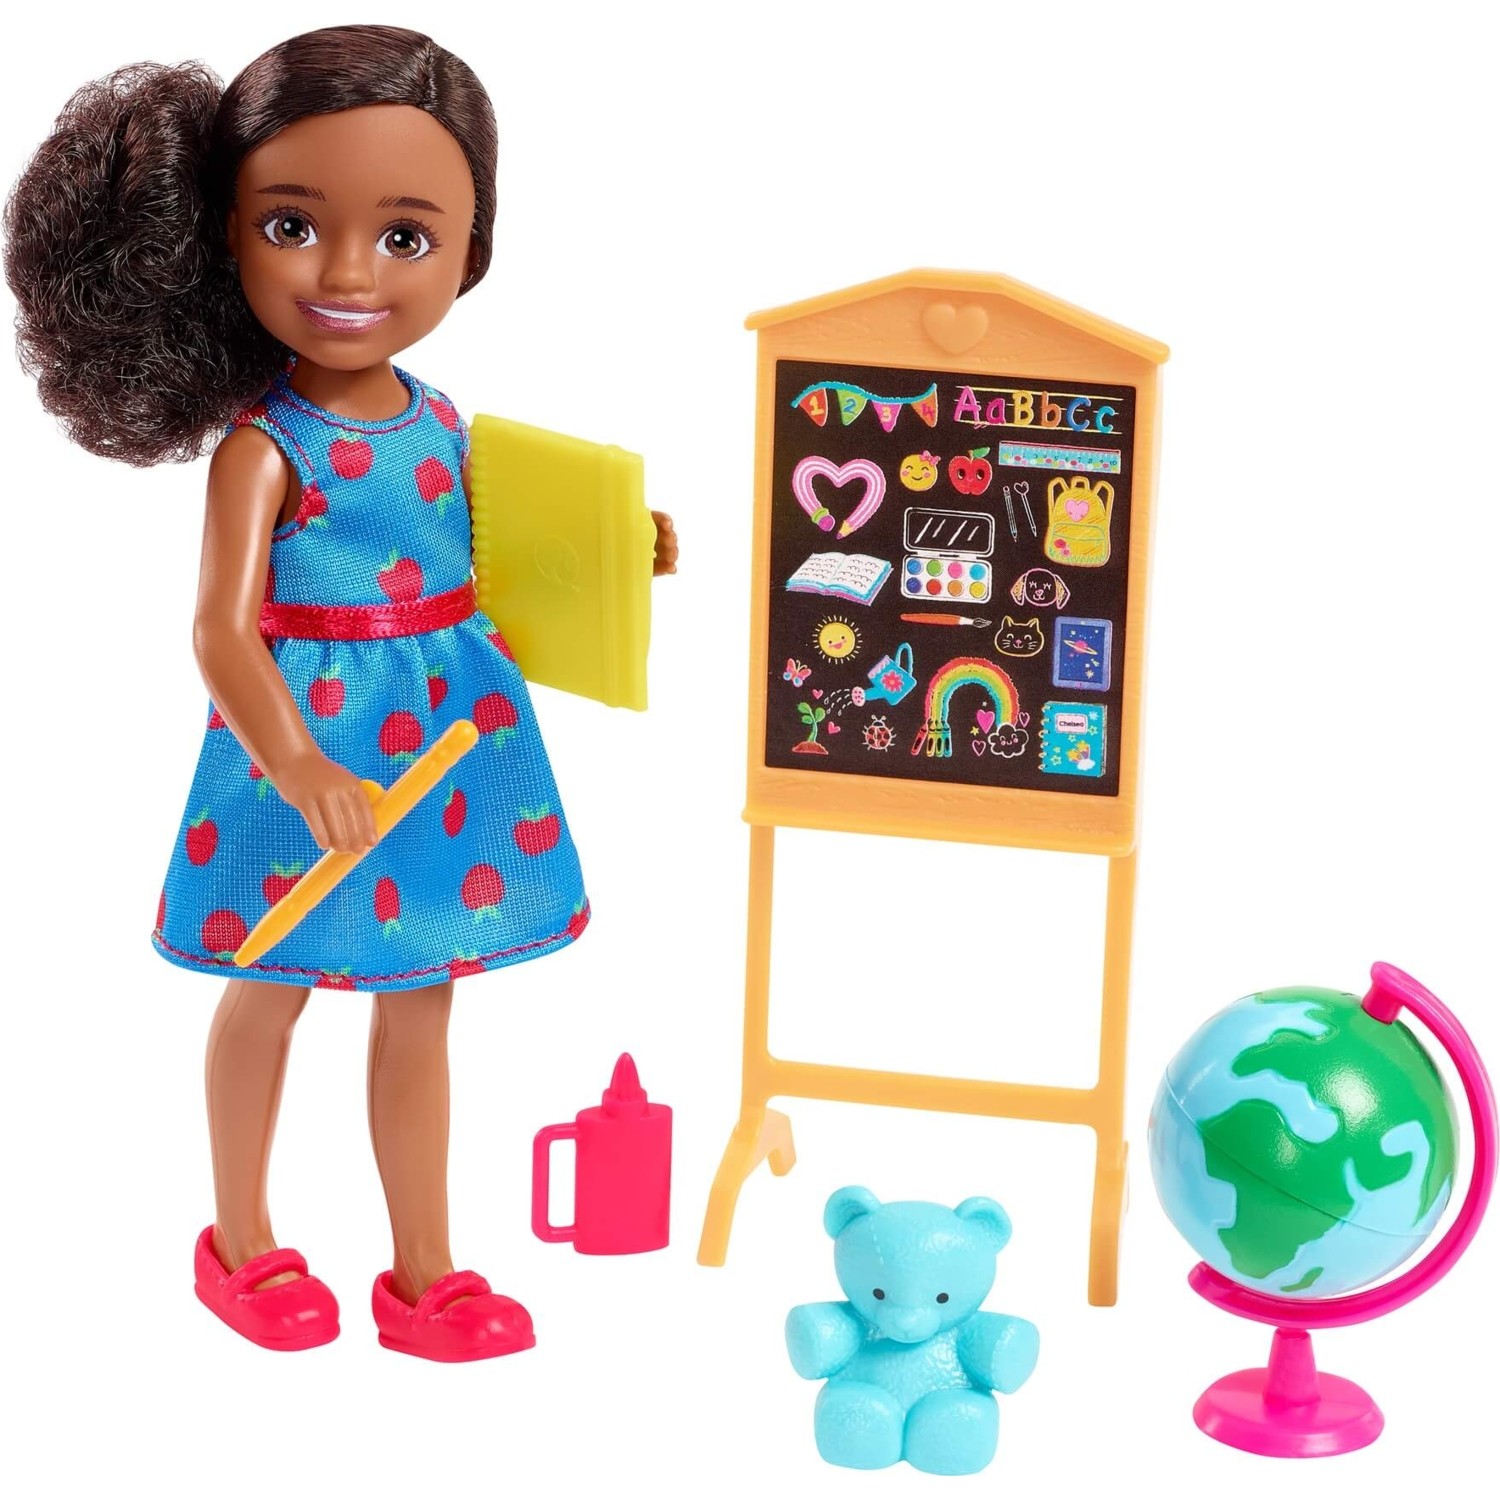 Кукла Barbie Челси учится профессии учитель серии кукол HCK69